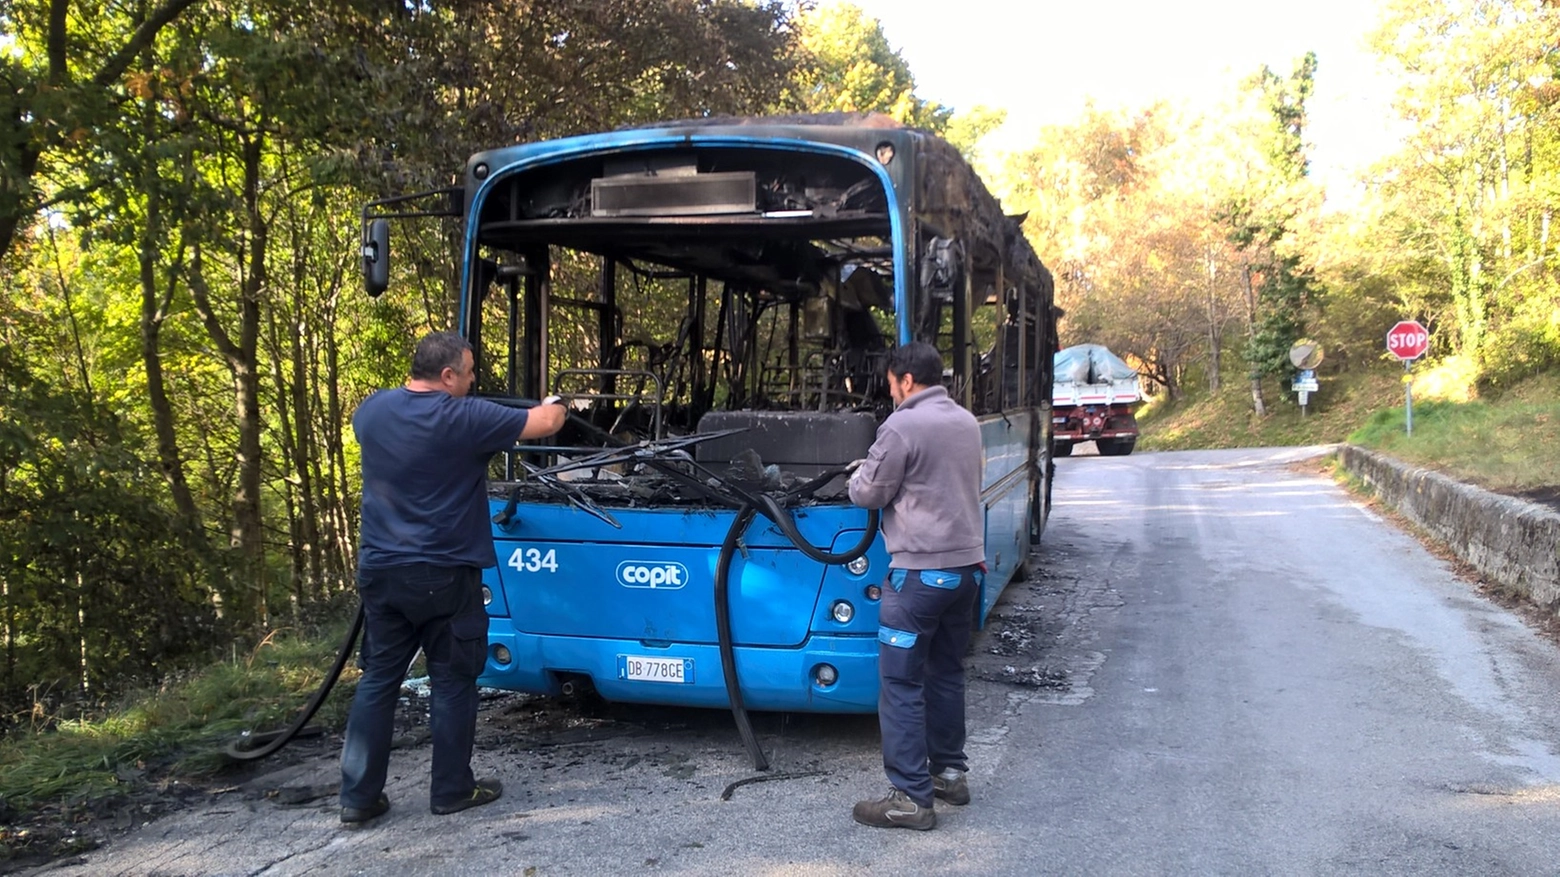 L'autobus di linea bruciato a Piteglio